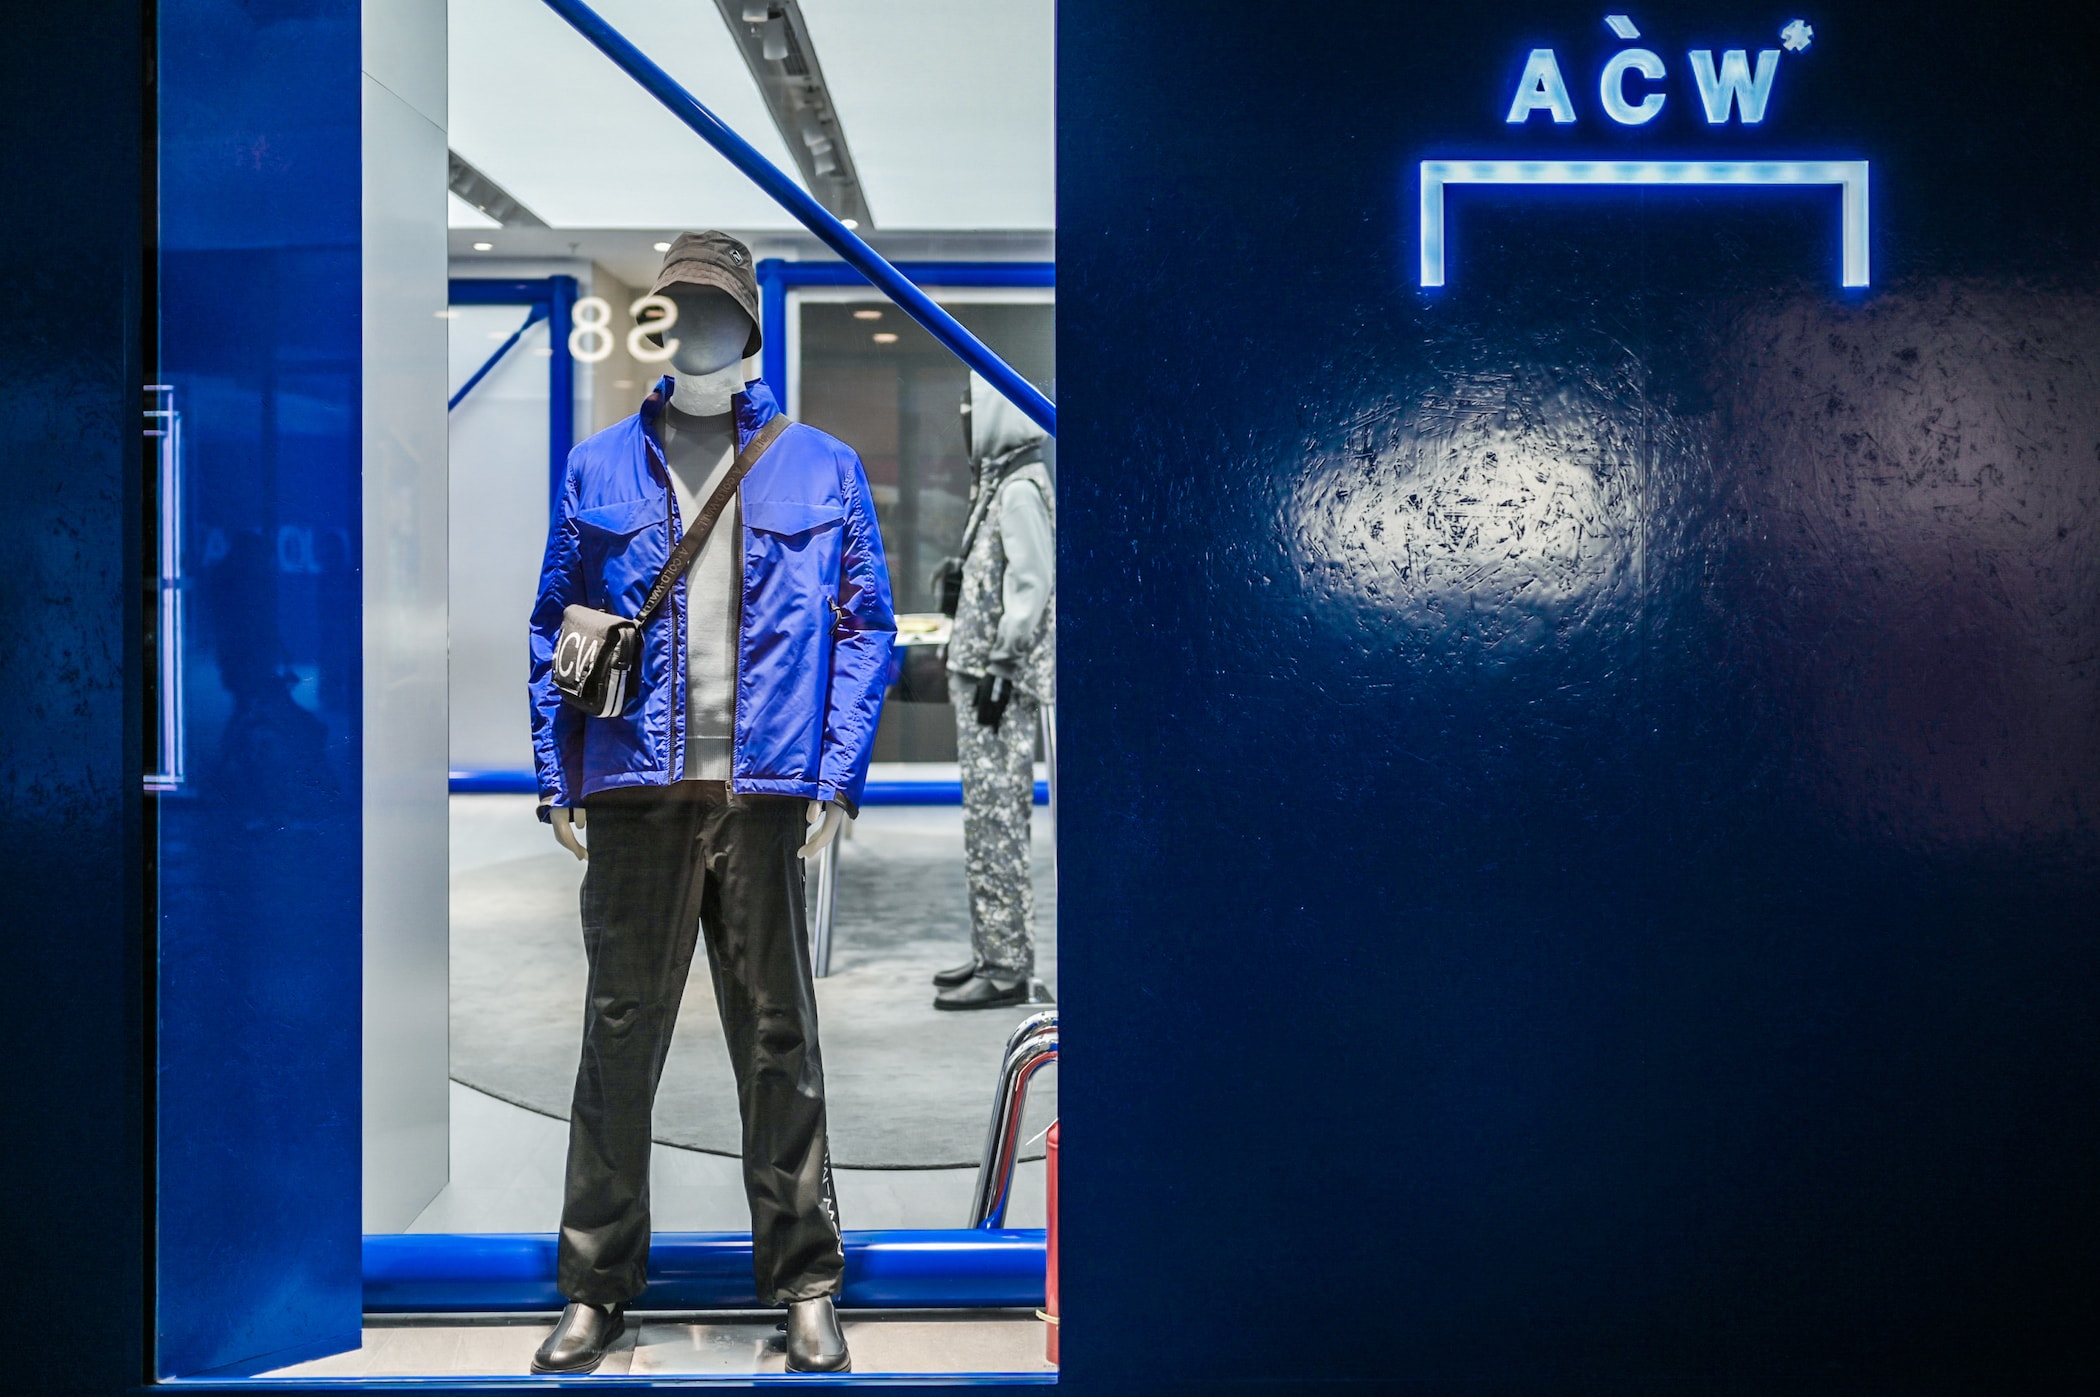 A-COLD-WALL* 于北京三里屯举办「超维触碰」互动装置展